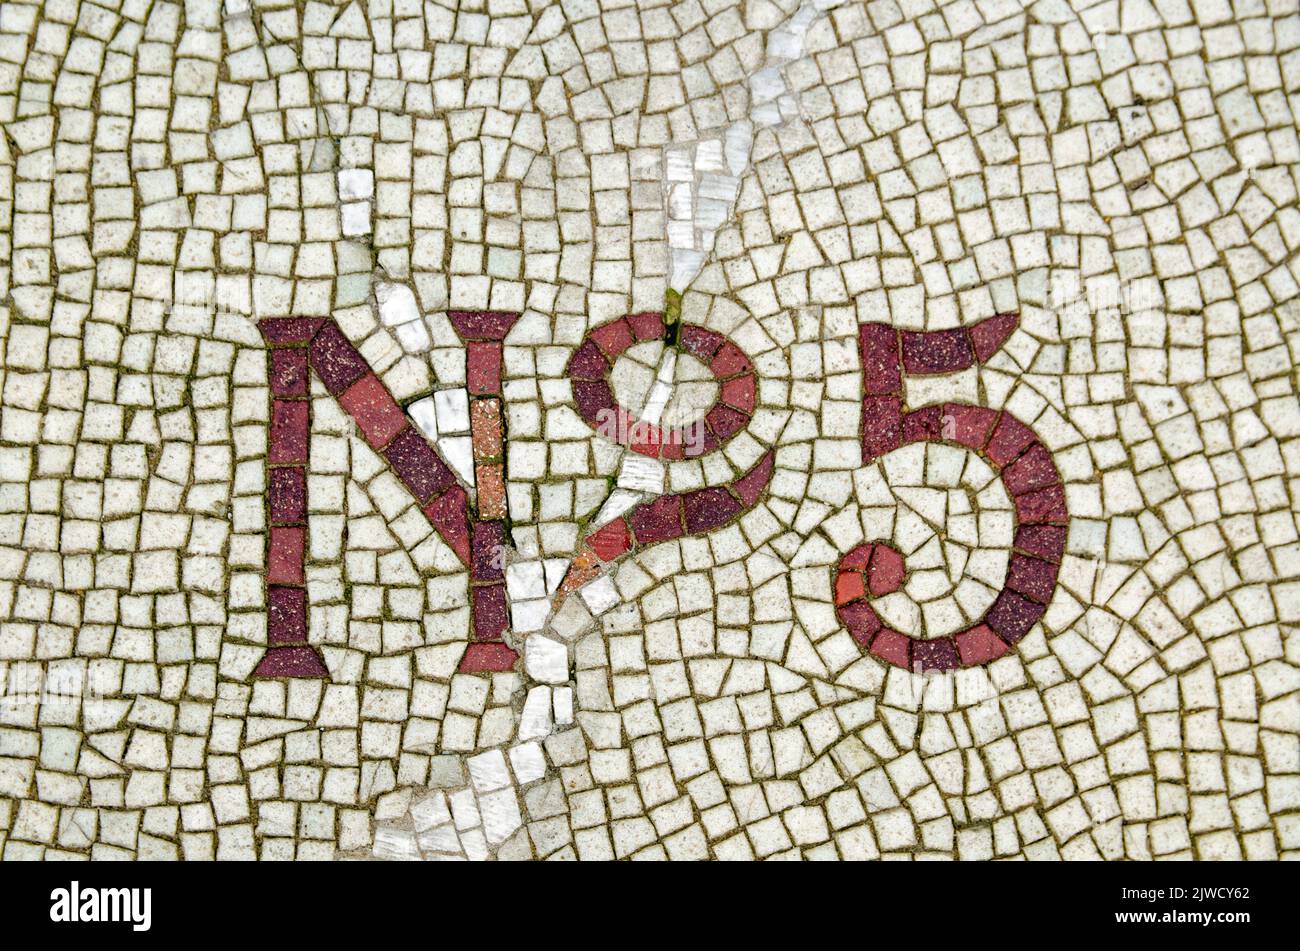 Piso de mosaico que muestra el número 5 fuera de una casa en el centro de Londres. Foto de stock